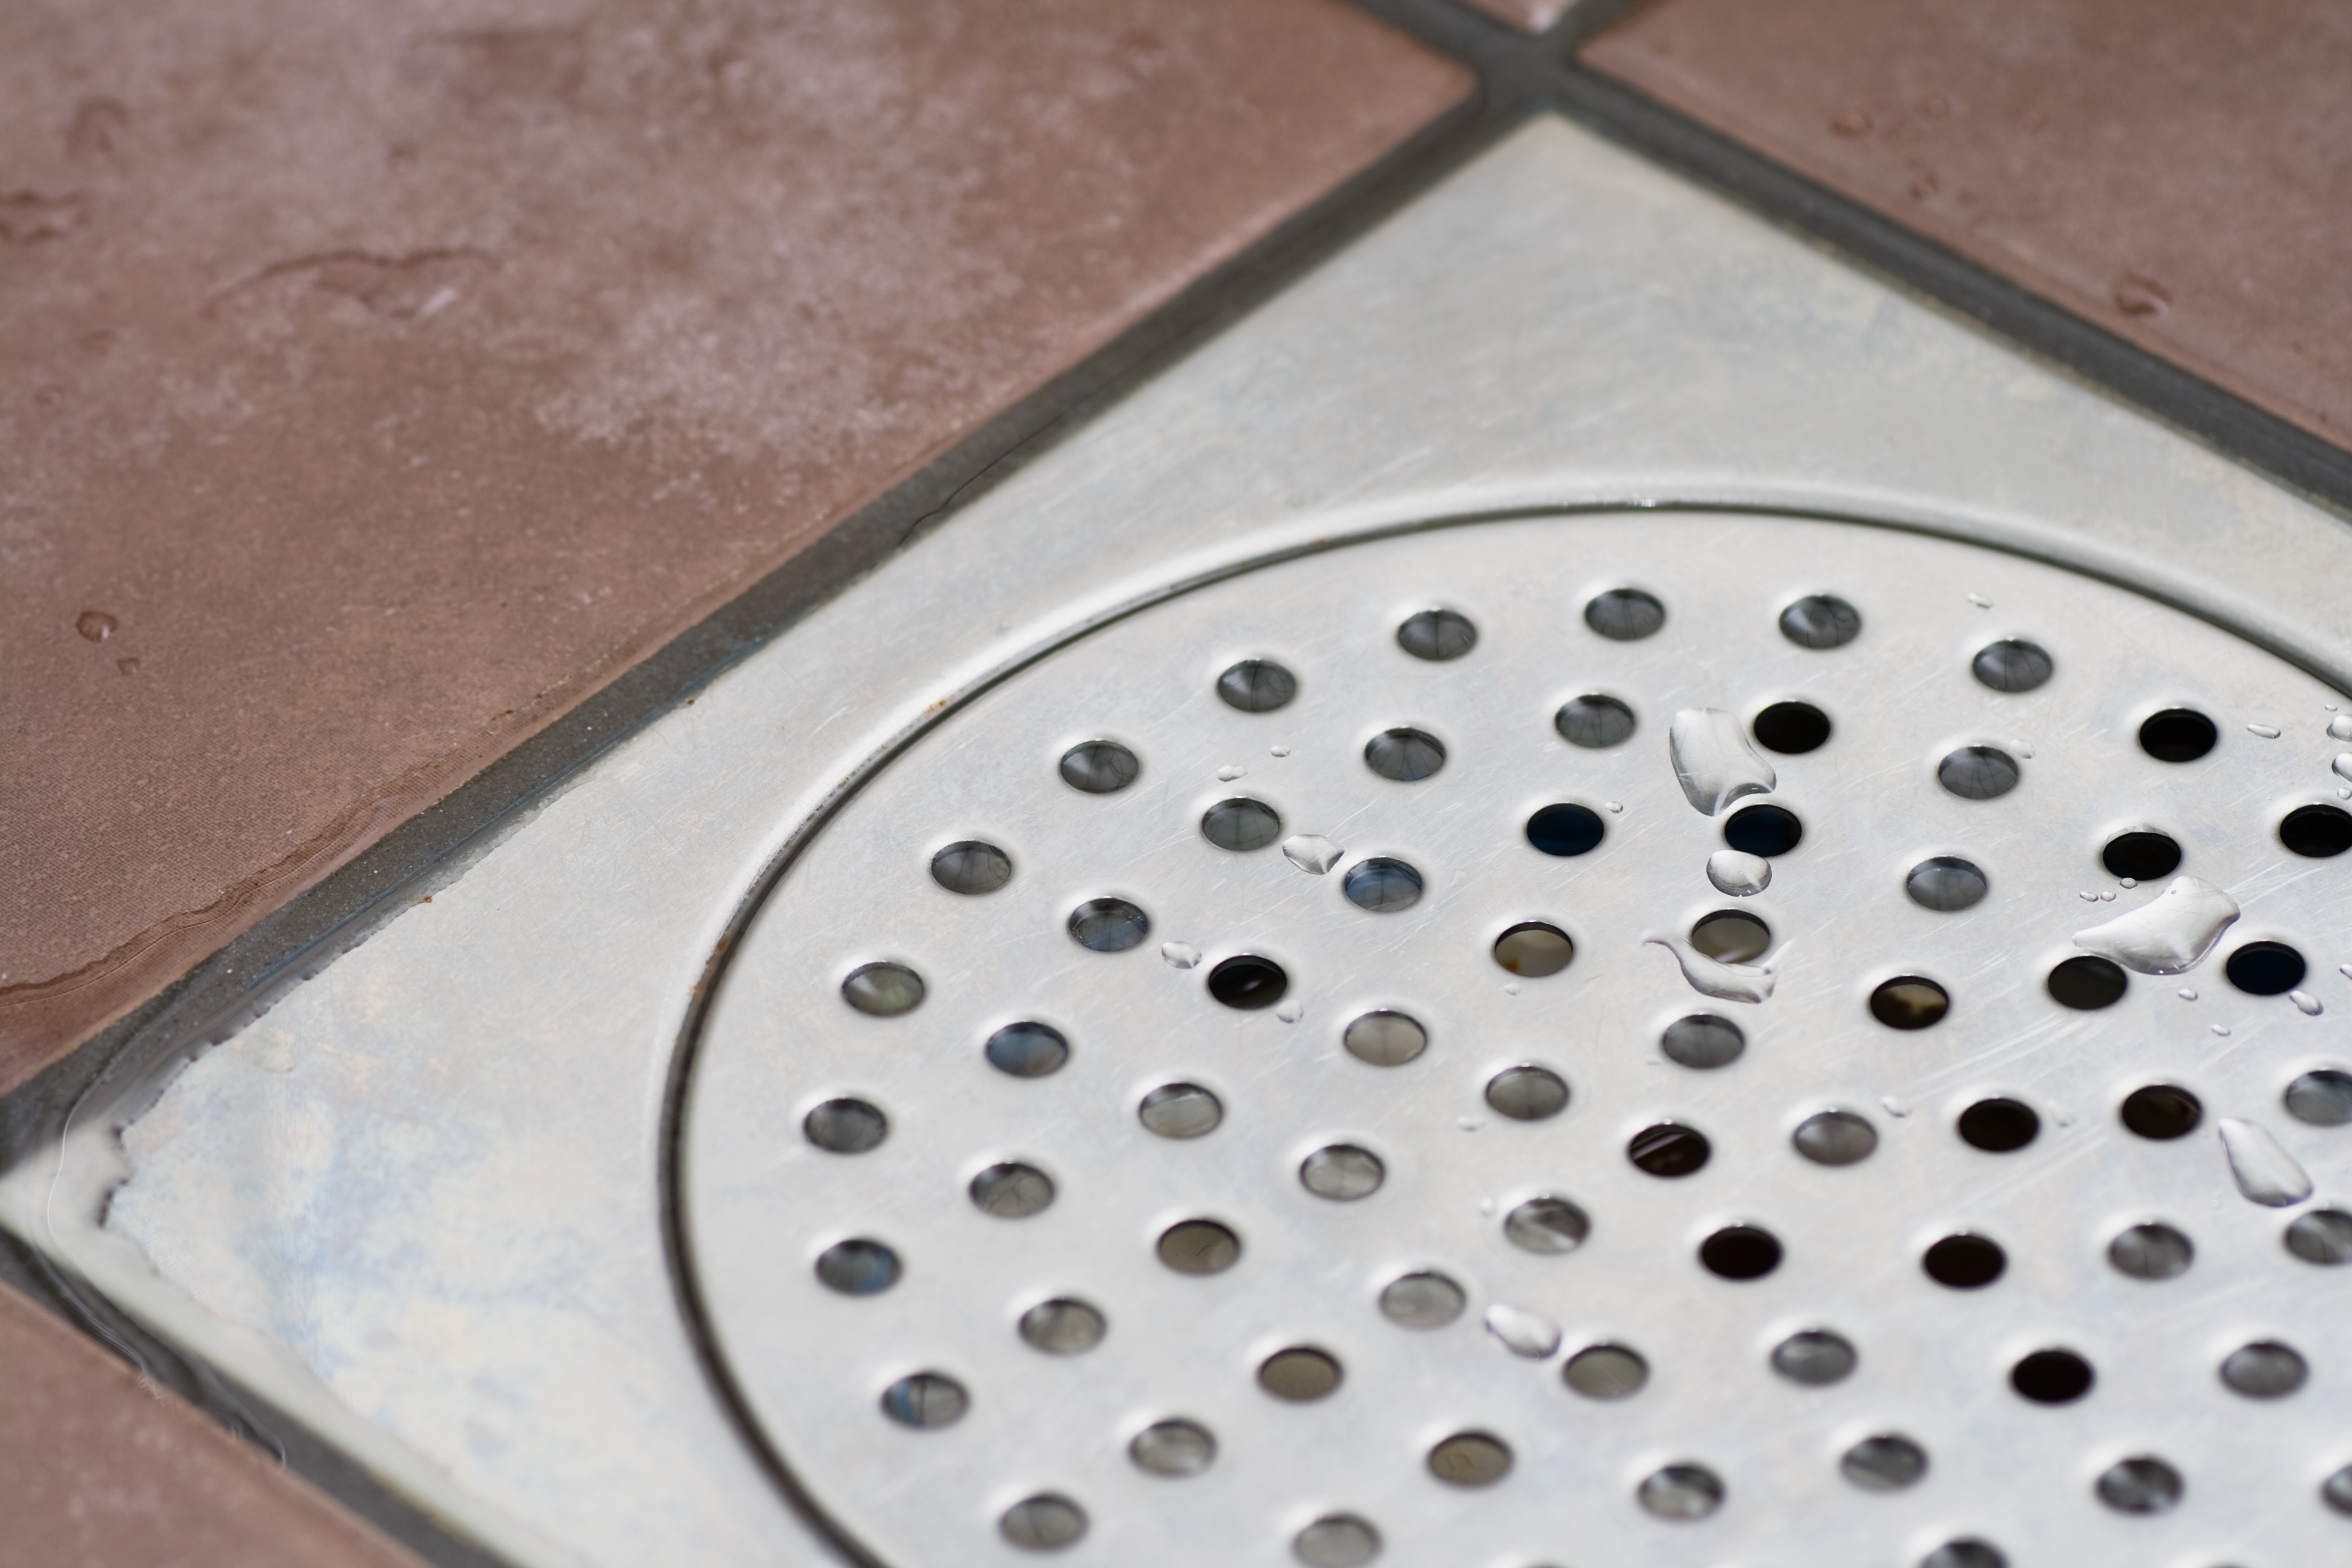 Em áreas com chuveiro, é possível utilizar o ralo seco sem grandes problemas com o mau cheiro (Foto: Getty Images)